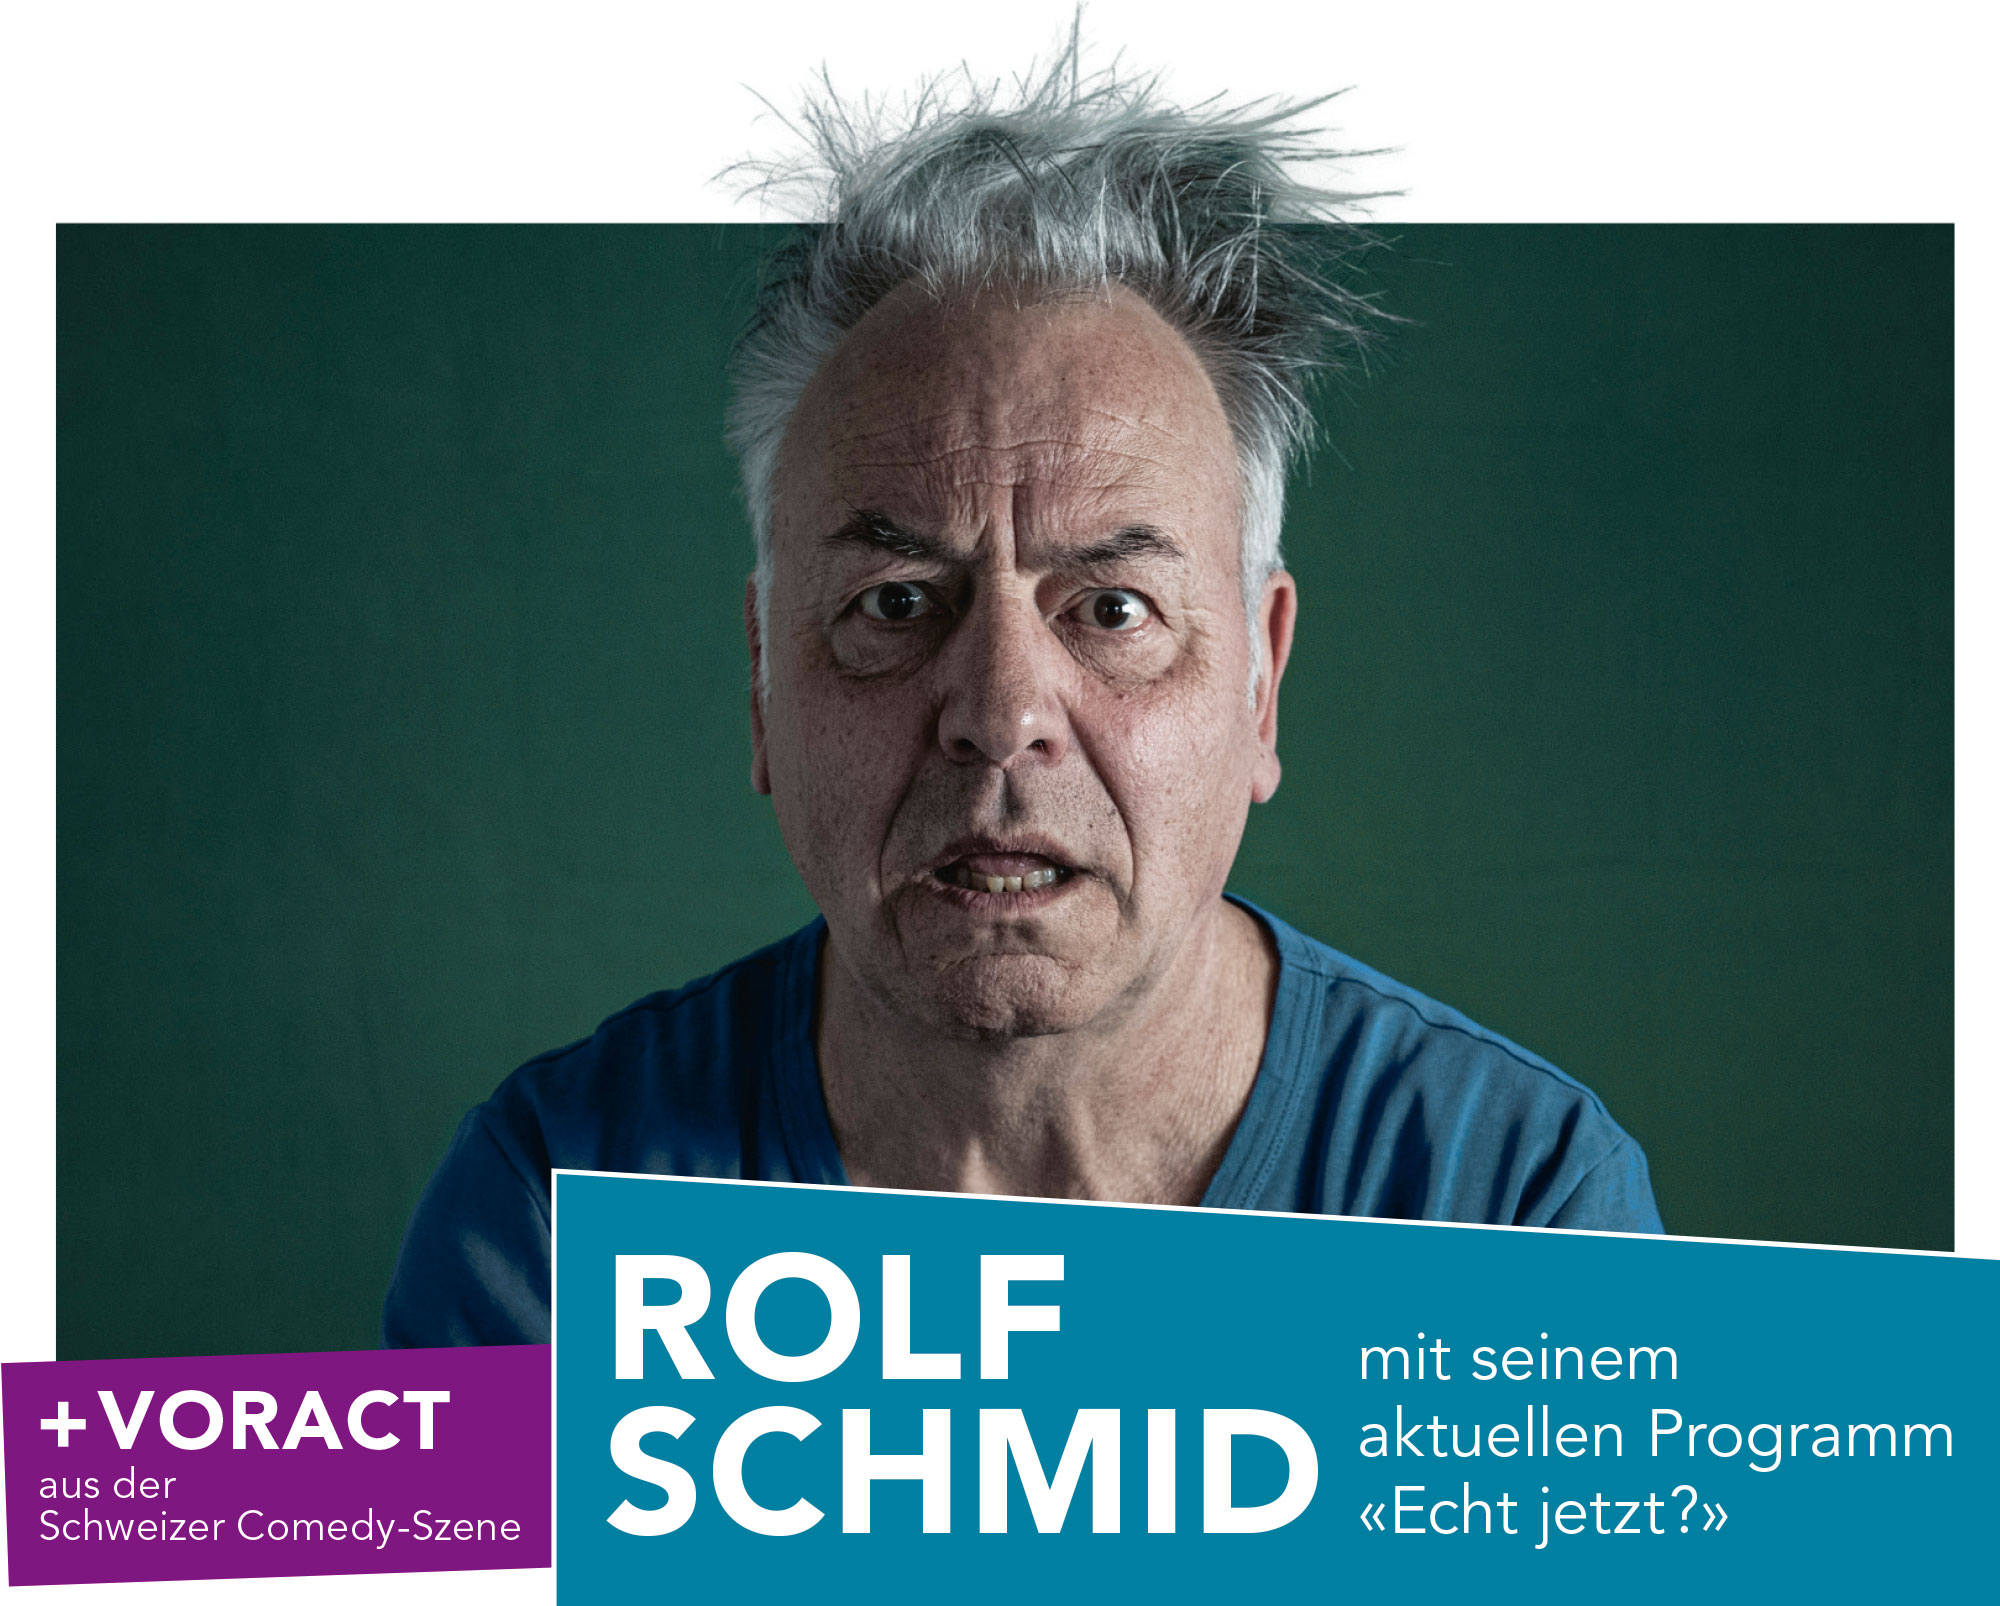 Rolf Schmid mit seinem aktuellen Programm «Echt jetzt ?»